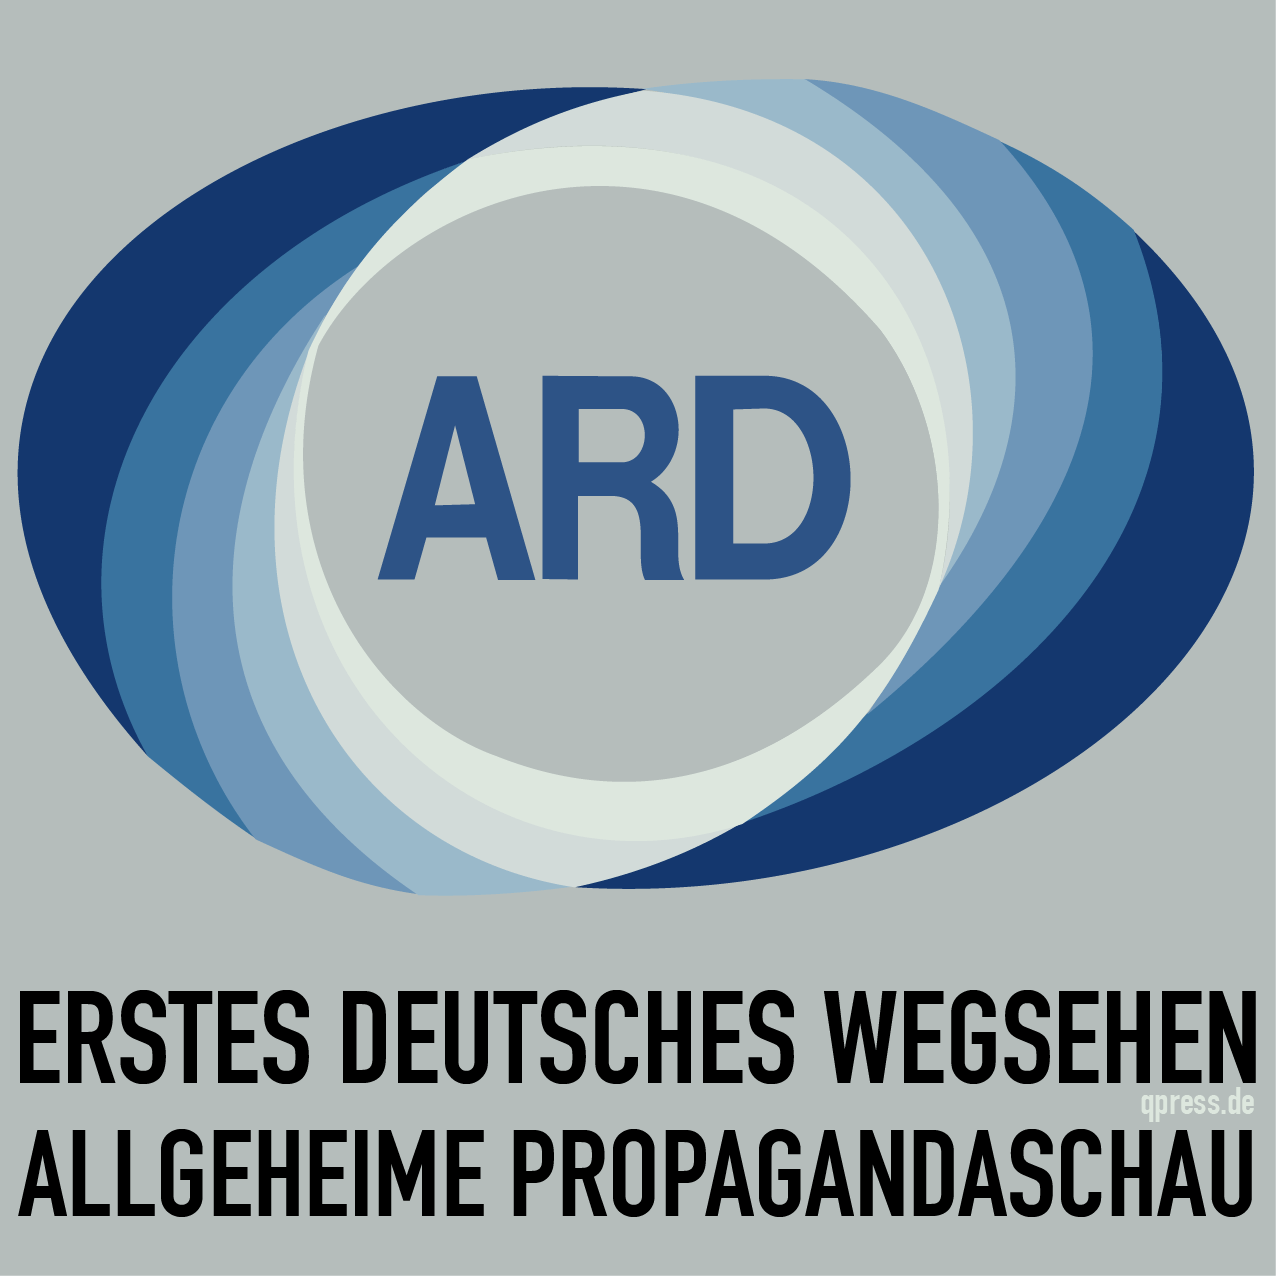 Erstes Deutsches Wegsehen Altes-ARD_Logo Deutsche Allgemeine Propagandaschau Staatspropaganda qpress quadrat